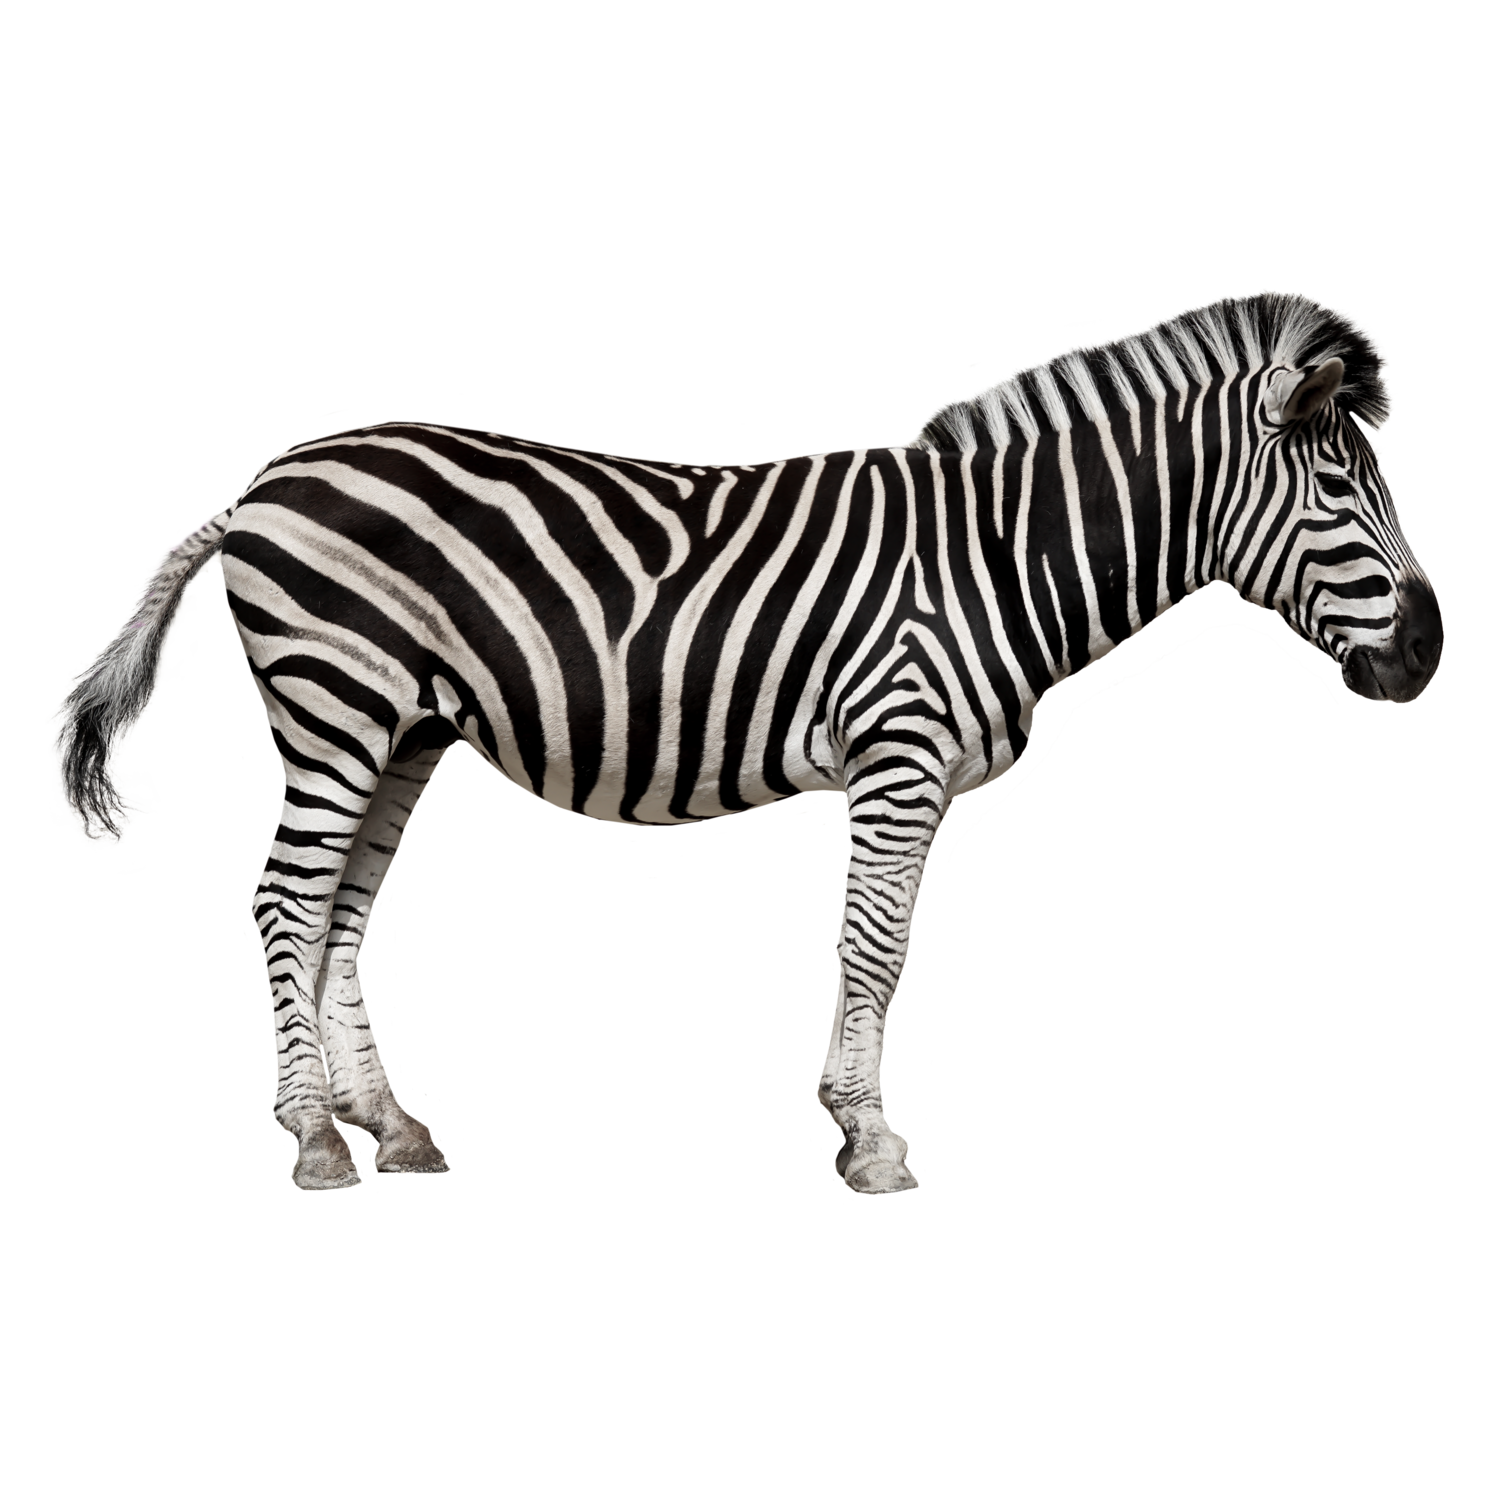 Zebra PNG Image HD